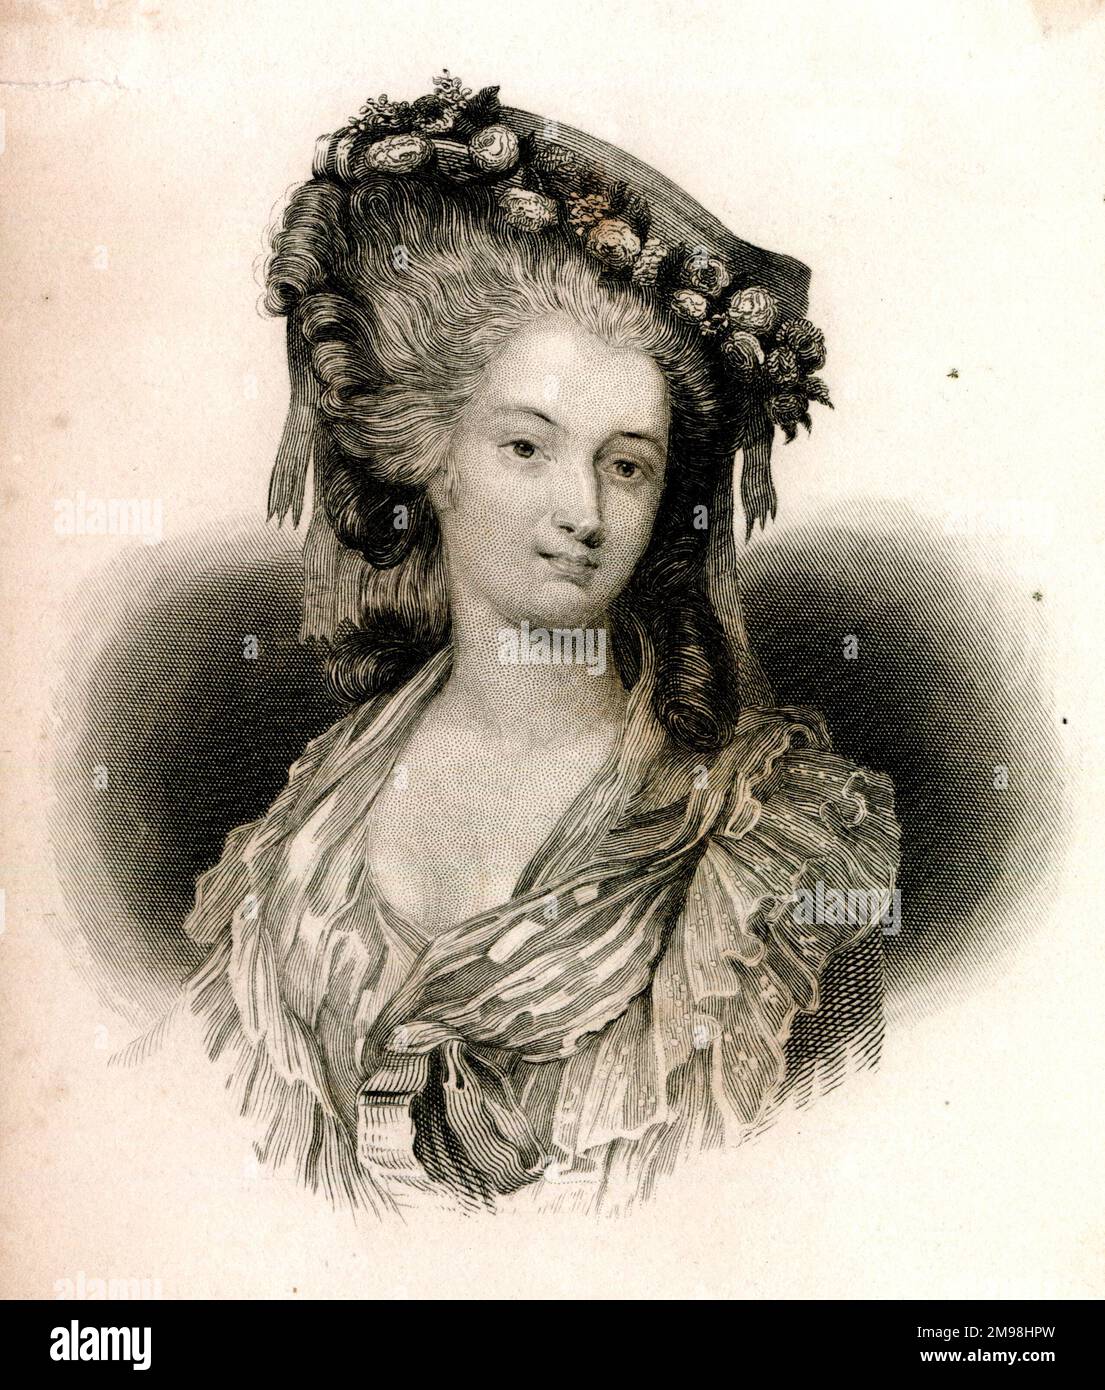 Marie Thérèse Louise de Savoie, princesse de Lamballe (1749-1972), confidente de la reine Marie-Antoinette de France. Banque D'Images